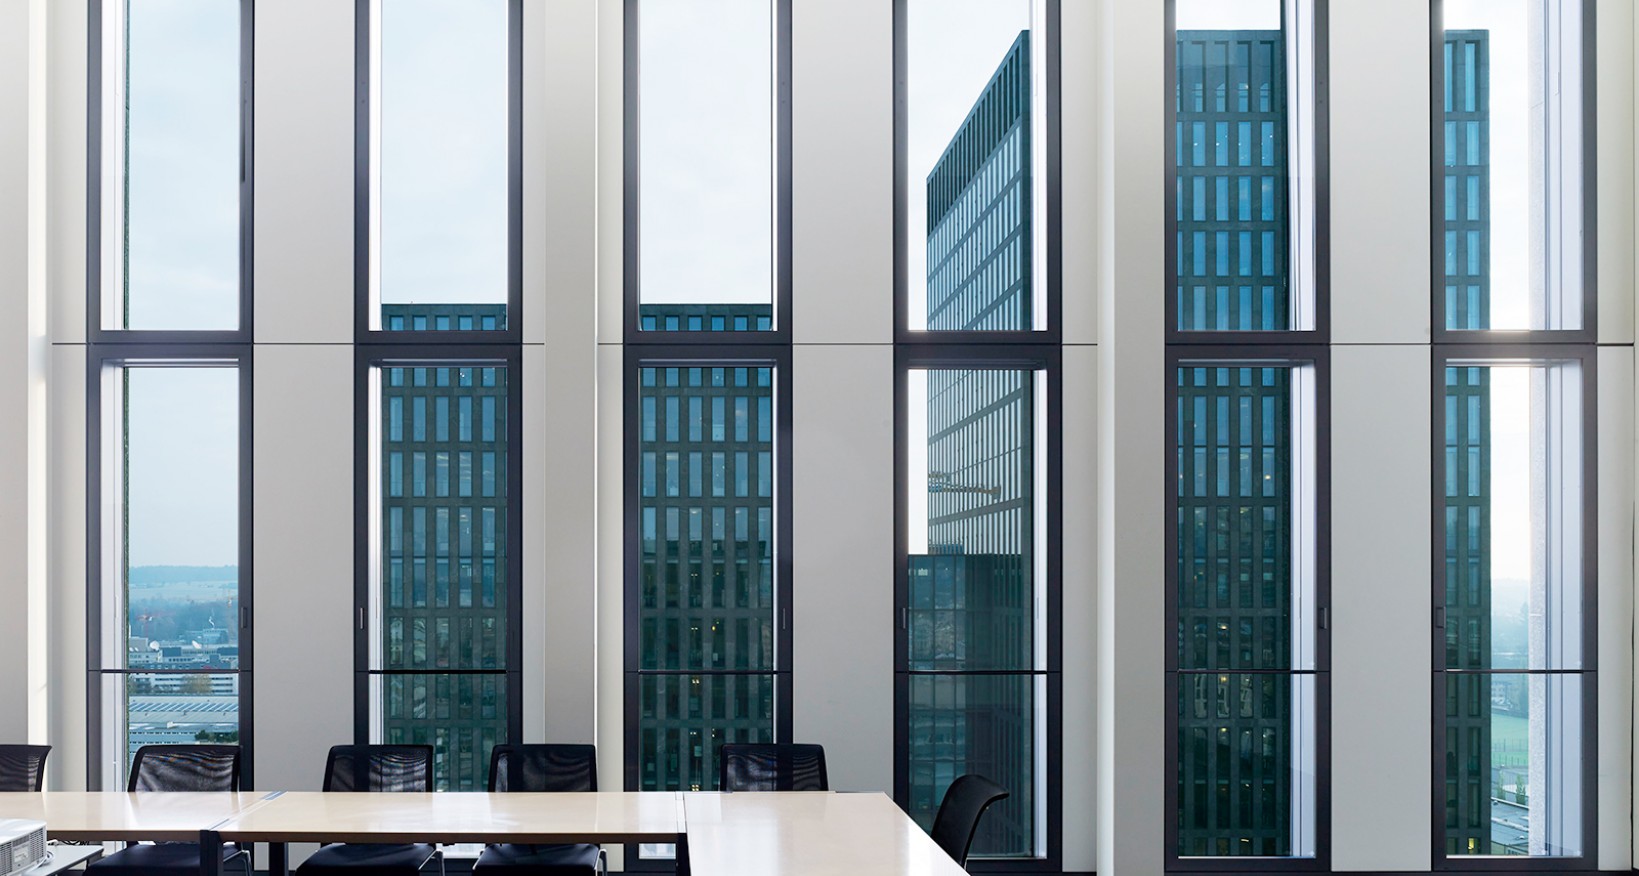 An diesem Hotspot in Zürich-Oerlikon vermieten wir ab sofort oder  nach Vereinbarung hochwertig ausgebaute Büroflächen über den  Dächern von Zürich.